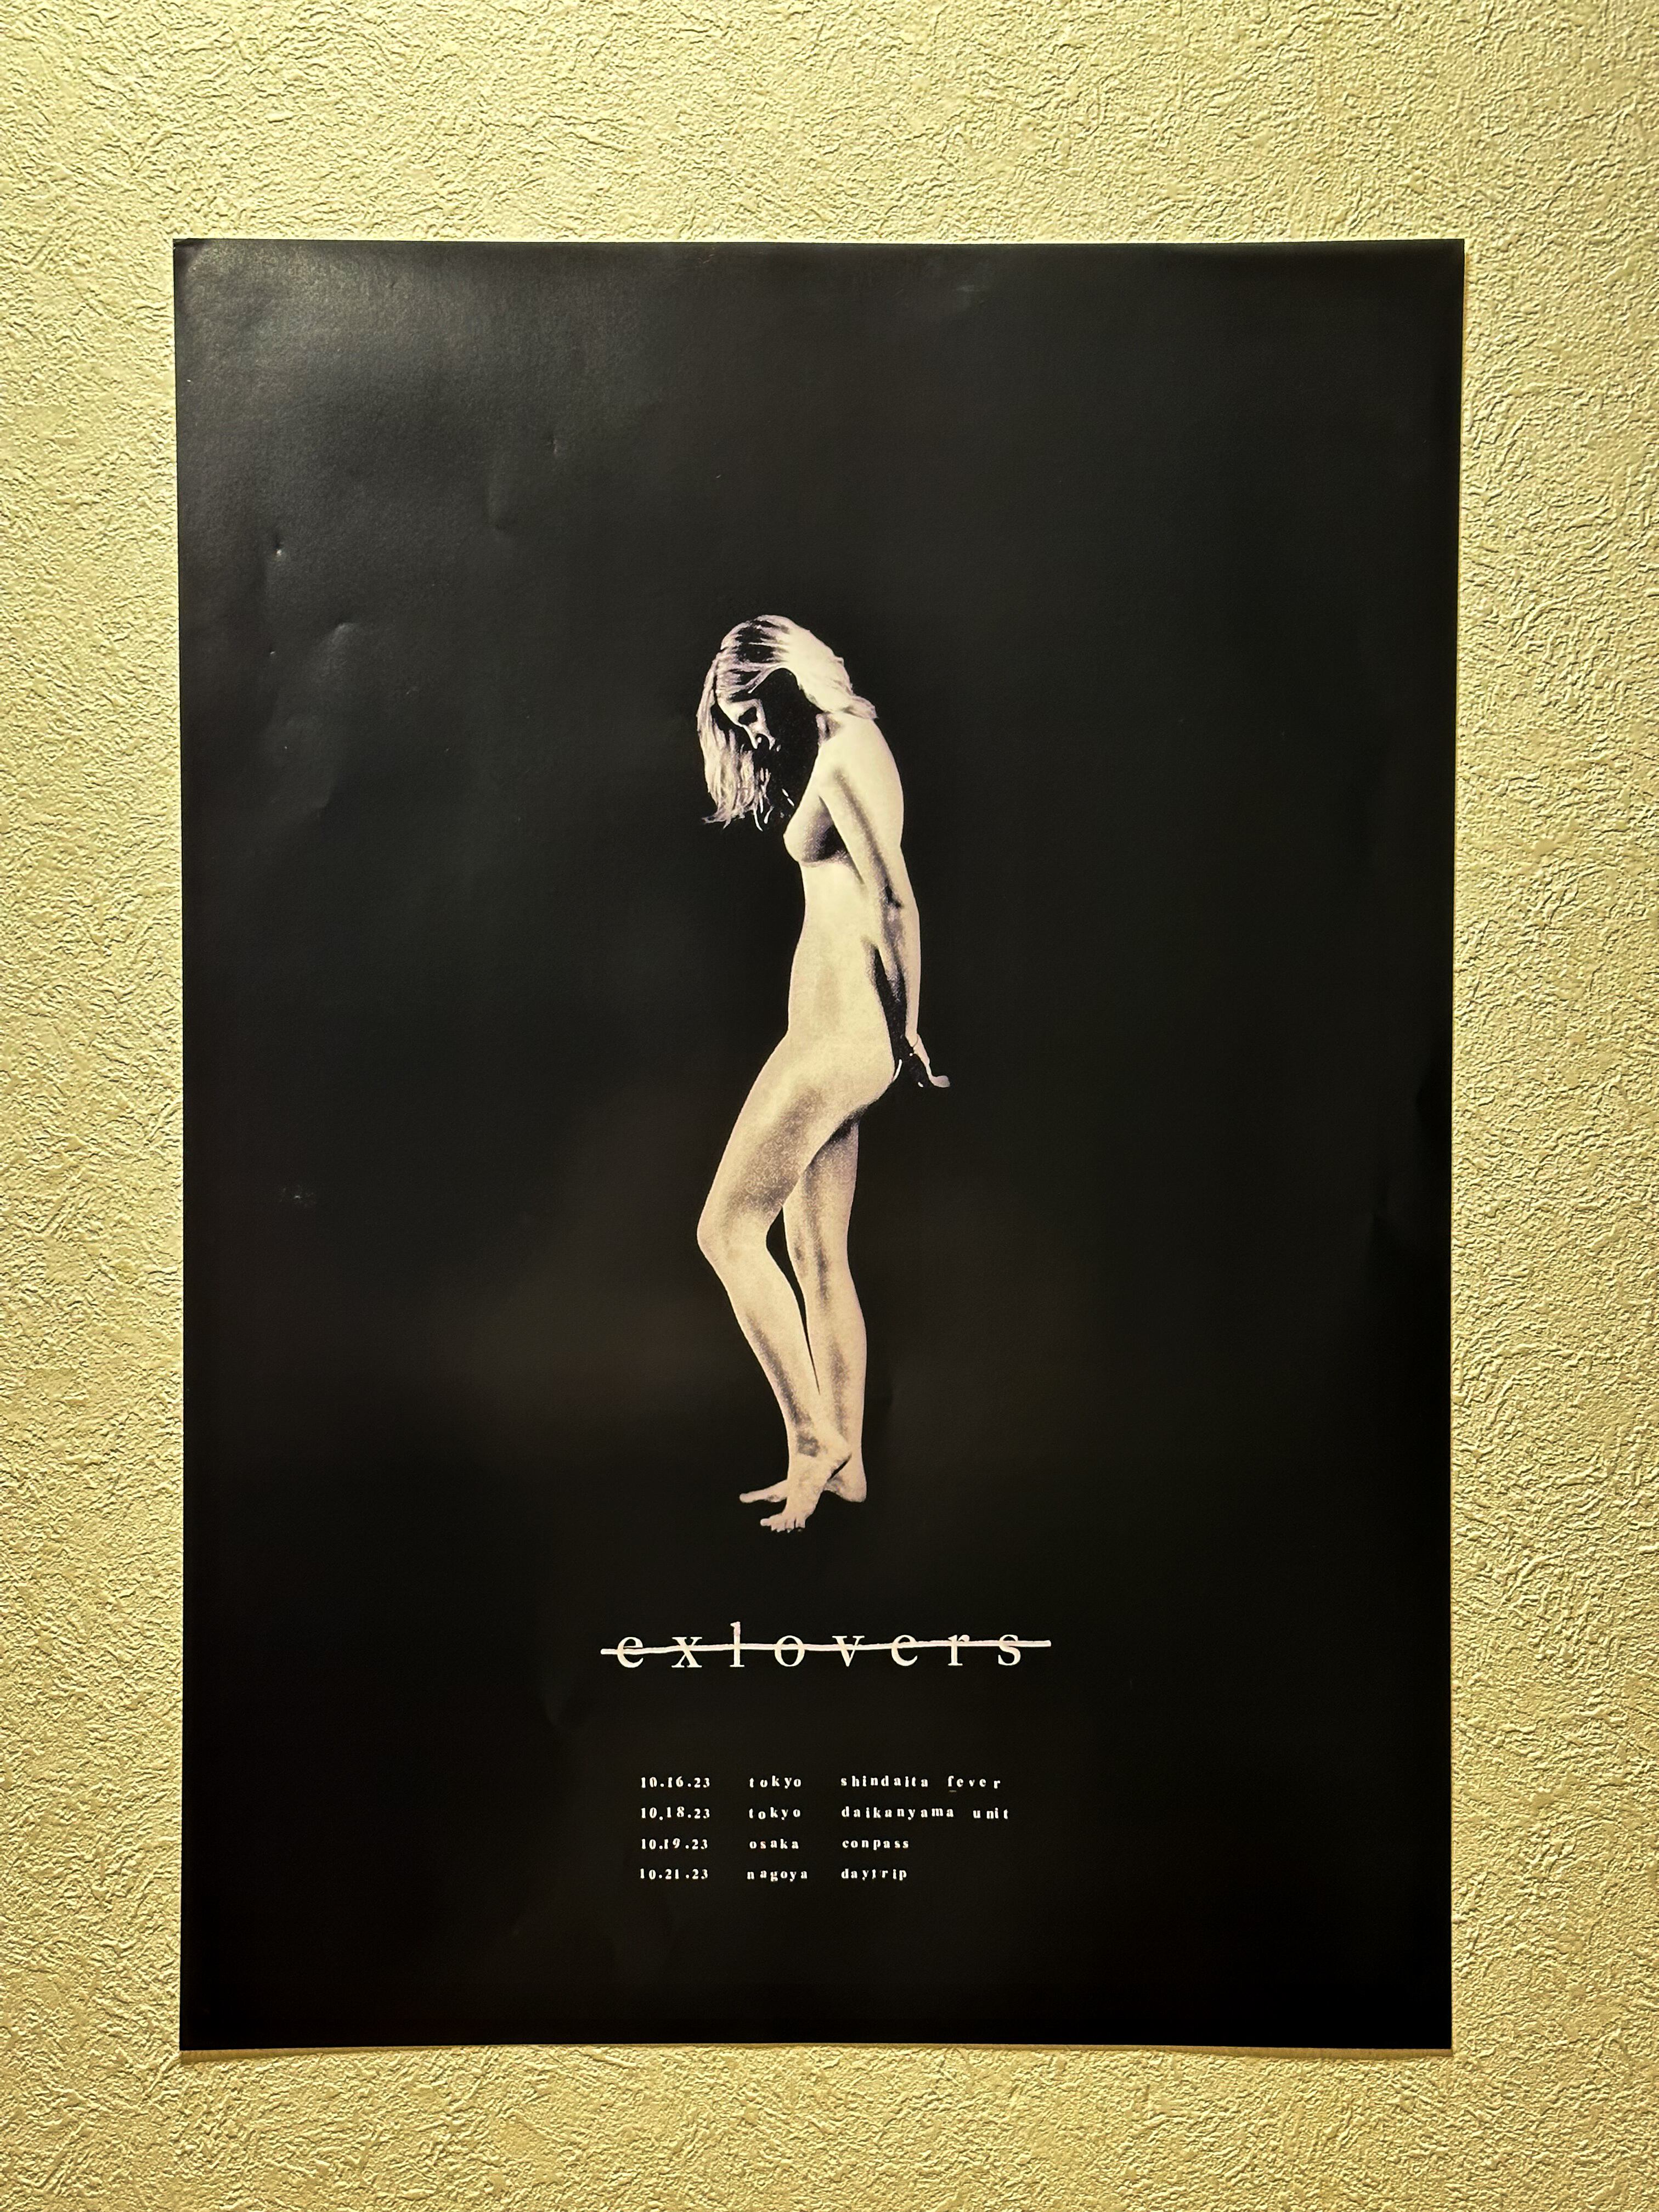 exlovers / Tour Poster